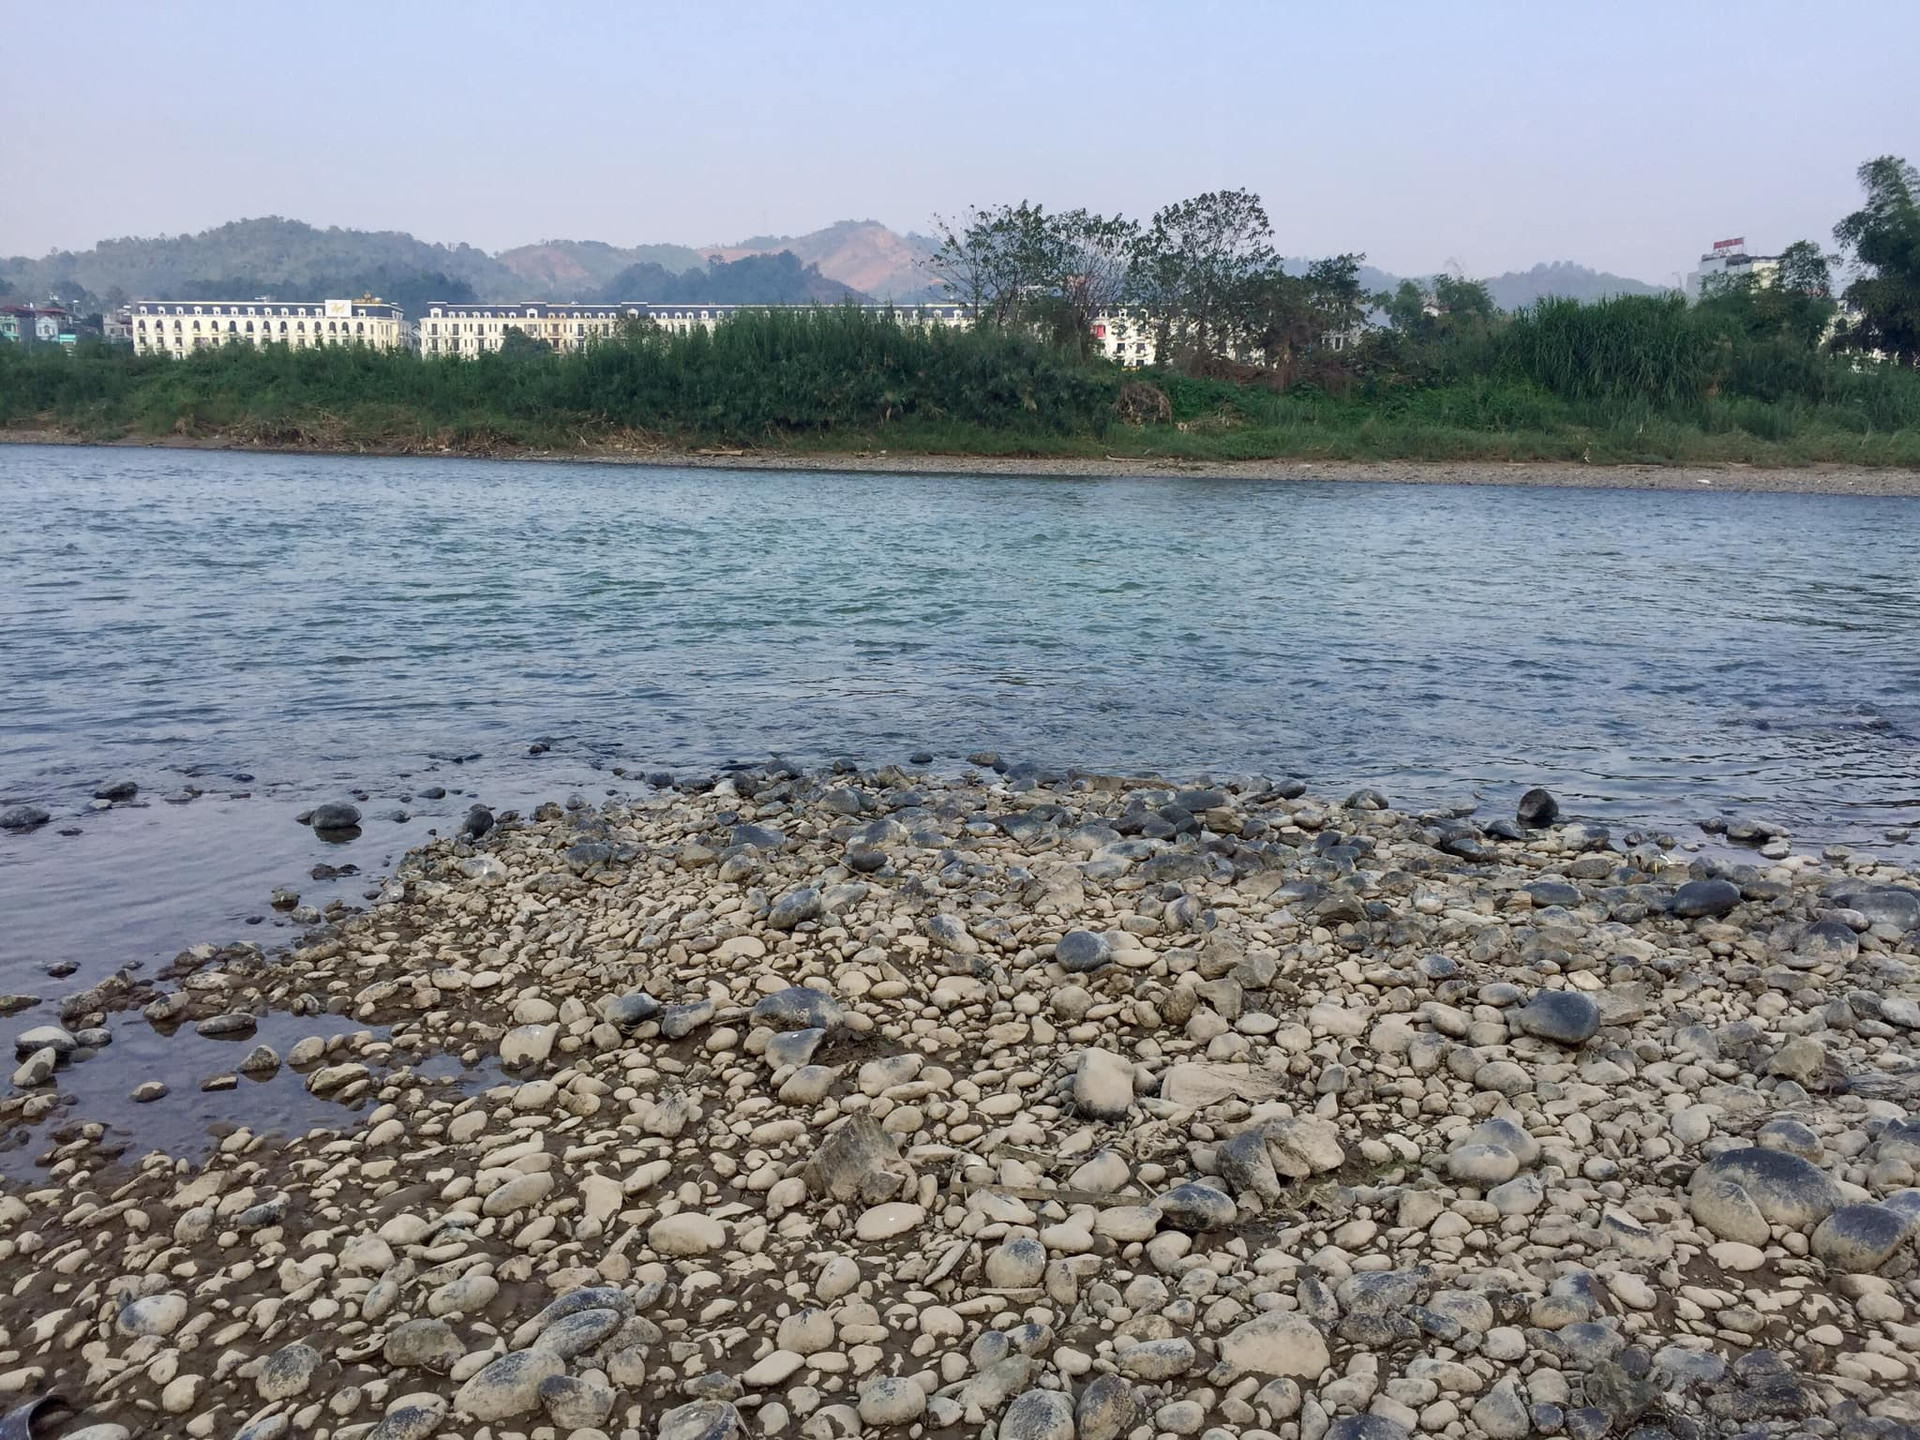 Thích thú với dòng sông nước trong xanh nhưng do đang ảnh hưởng của dịch bệnh Covid-19 và sợ không an toàn nên người dân thành phố Lào Cai không ai dám xuống những bãi đá lộ thiên dưới lòng sông Hồng để vui chơi.